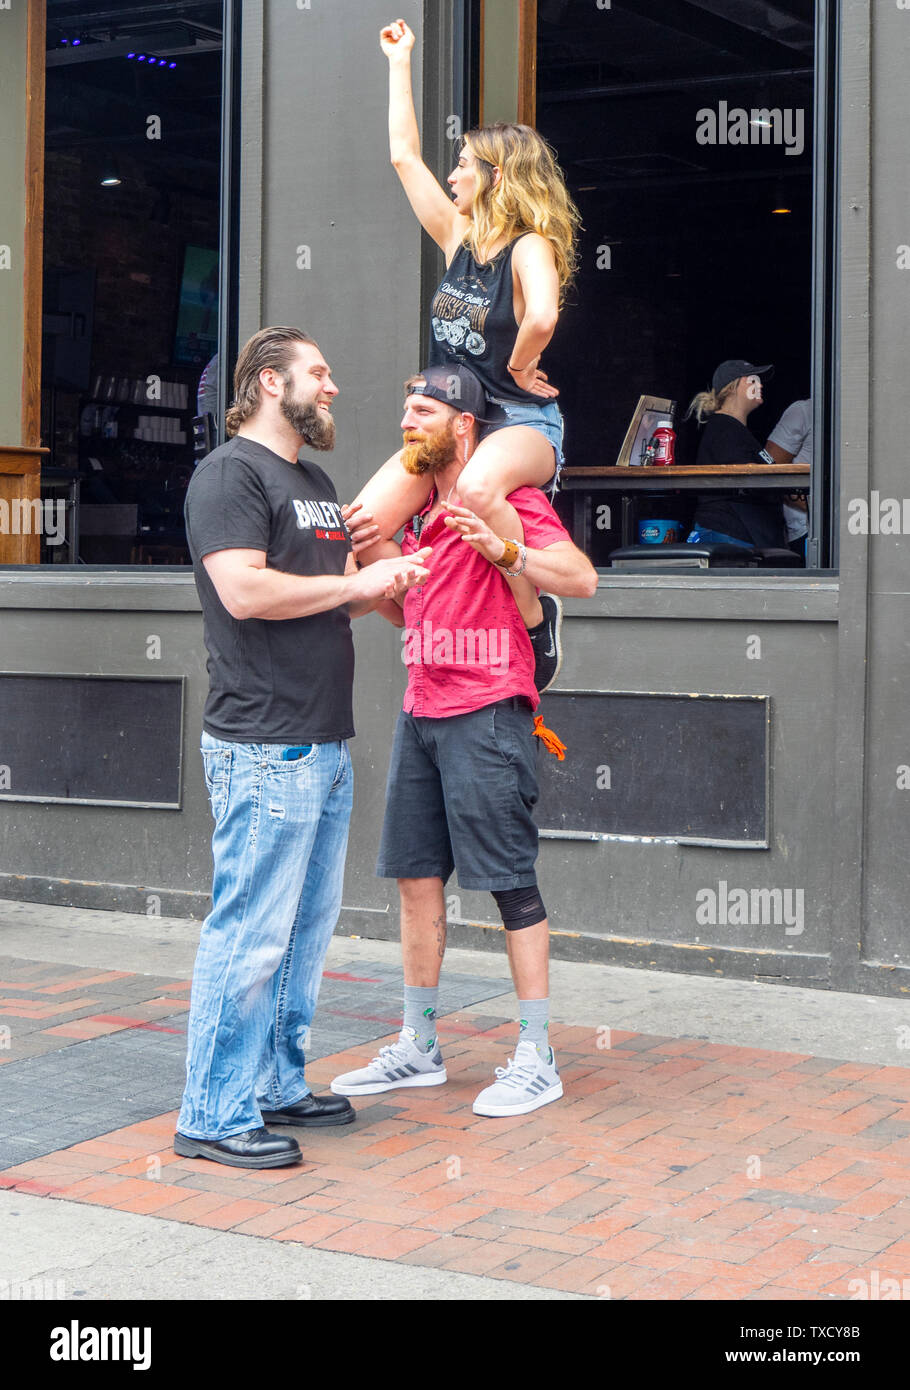 Una mujer sentada sobre los hombros del hombre, mientras él está hablando con otro hombre en Broadway en el NFL Draft 2019 de Nashville, Tennessee, EE.UU.. Foto de stock